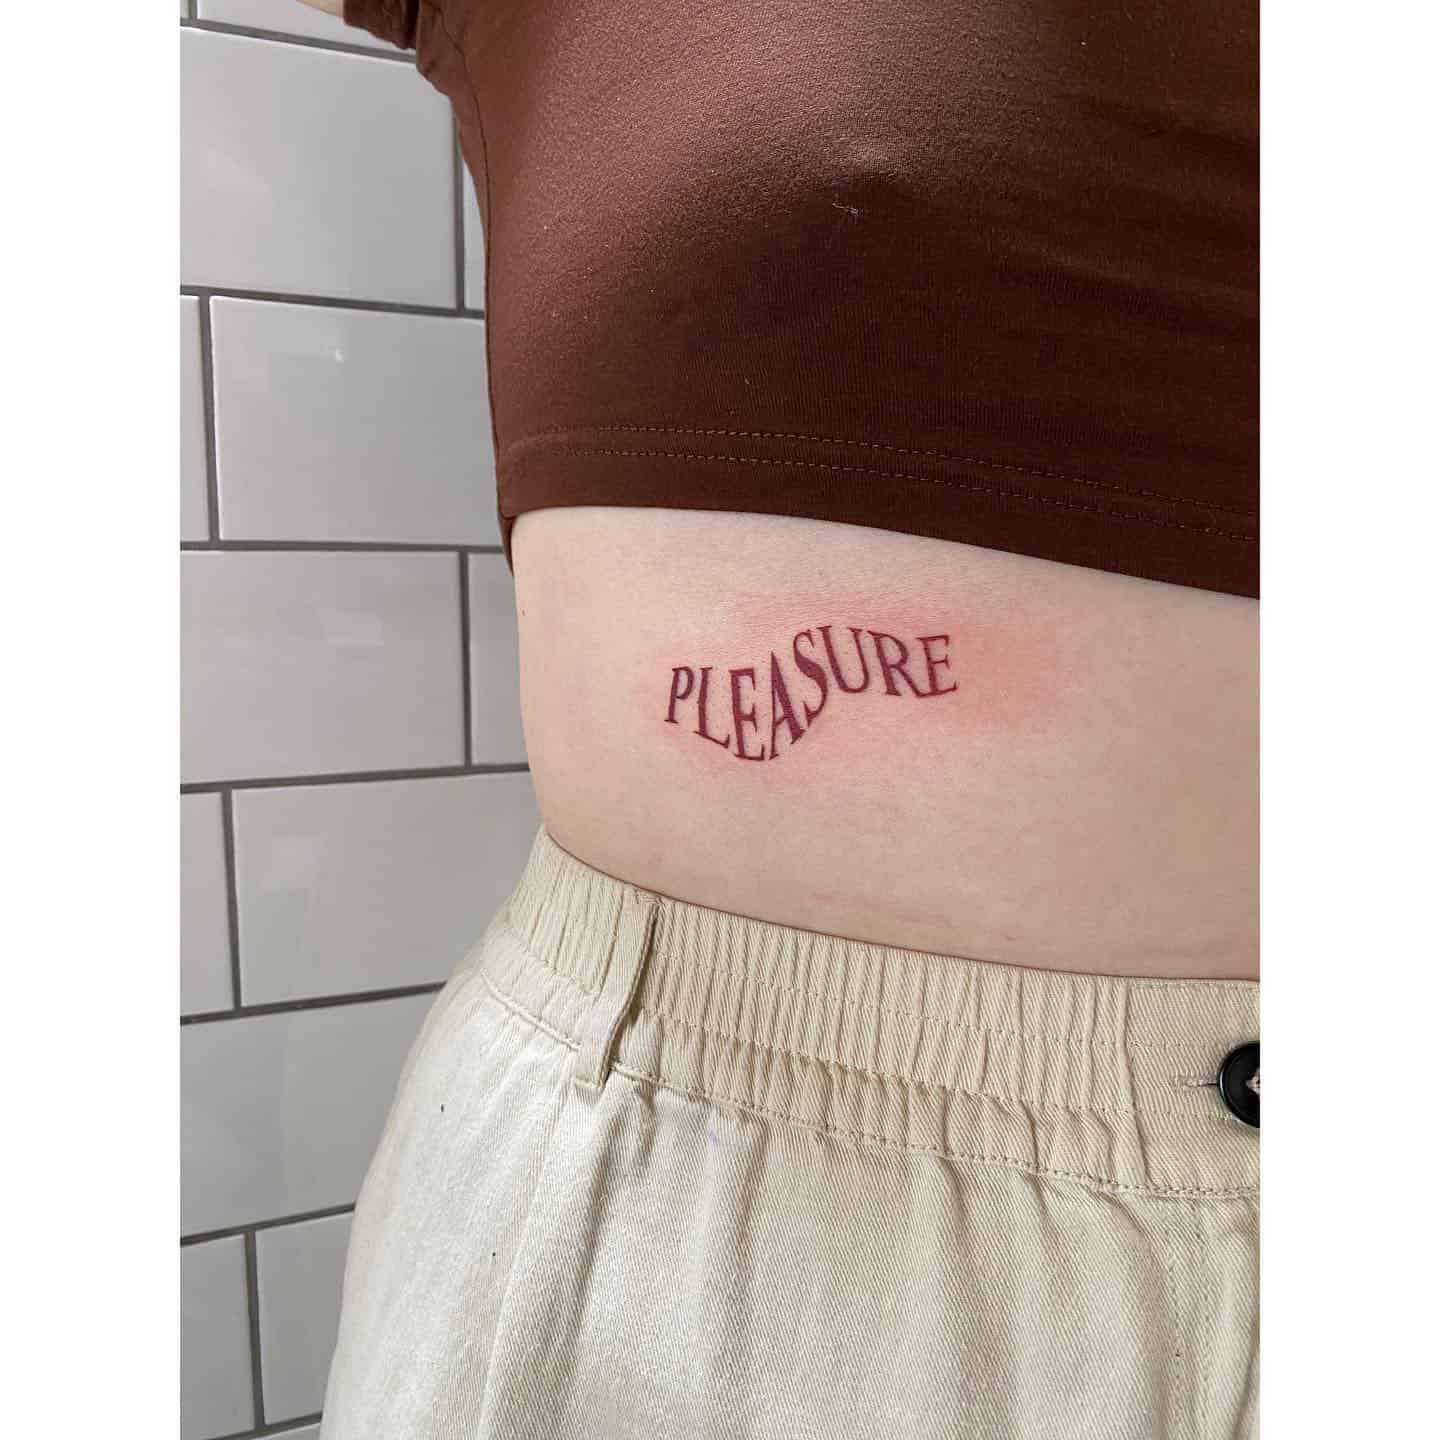 Tatuaje de una sola palabra 4